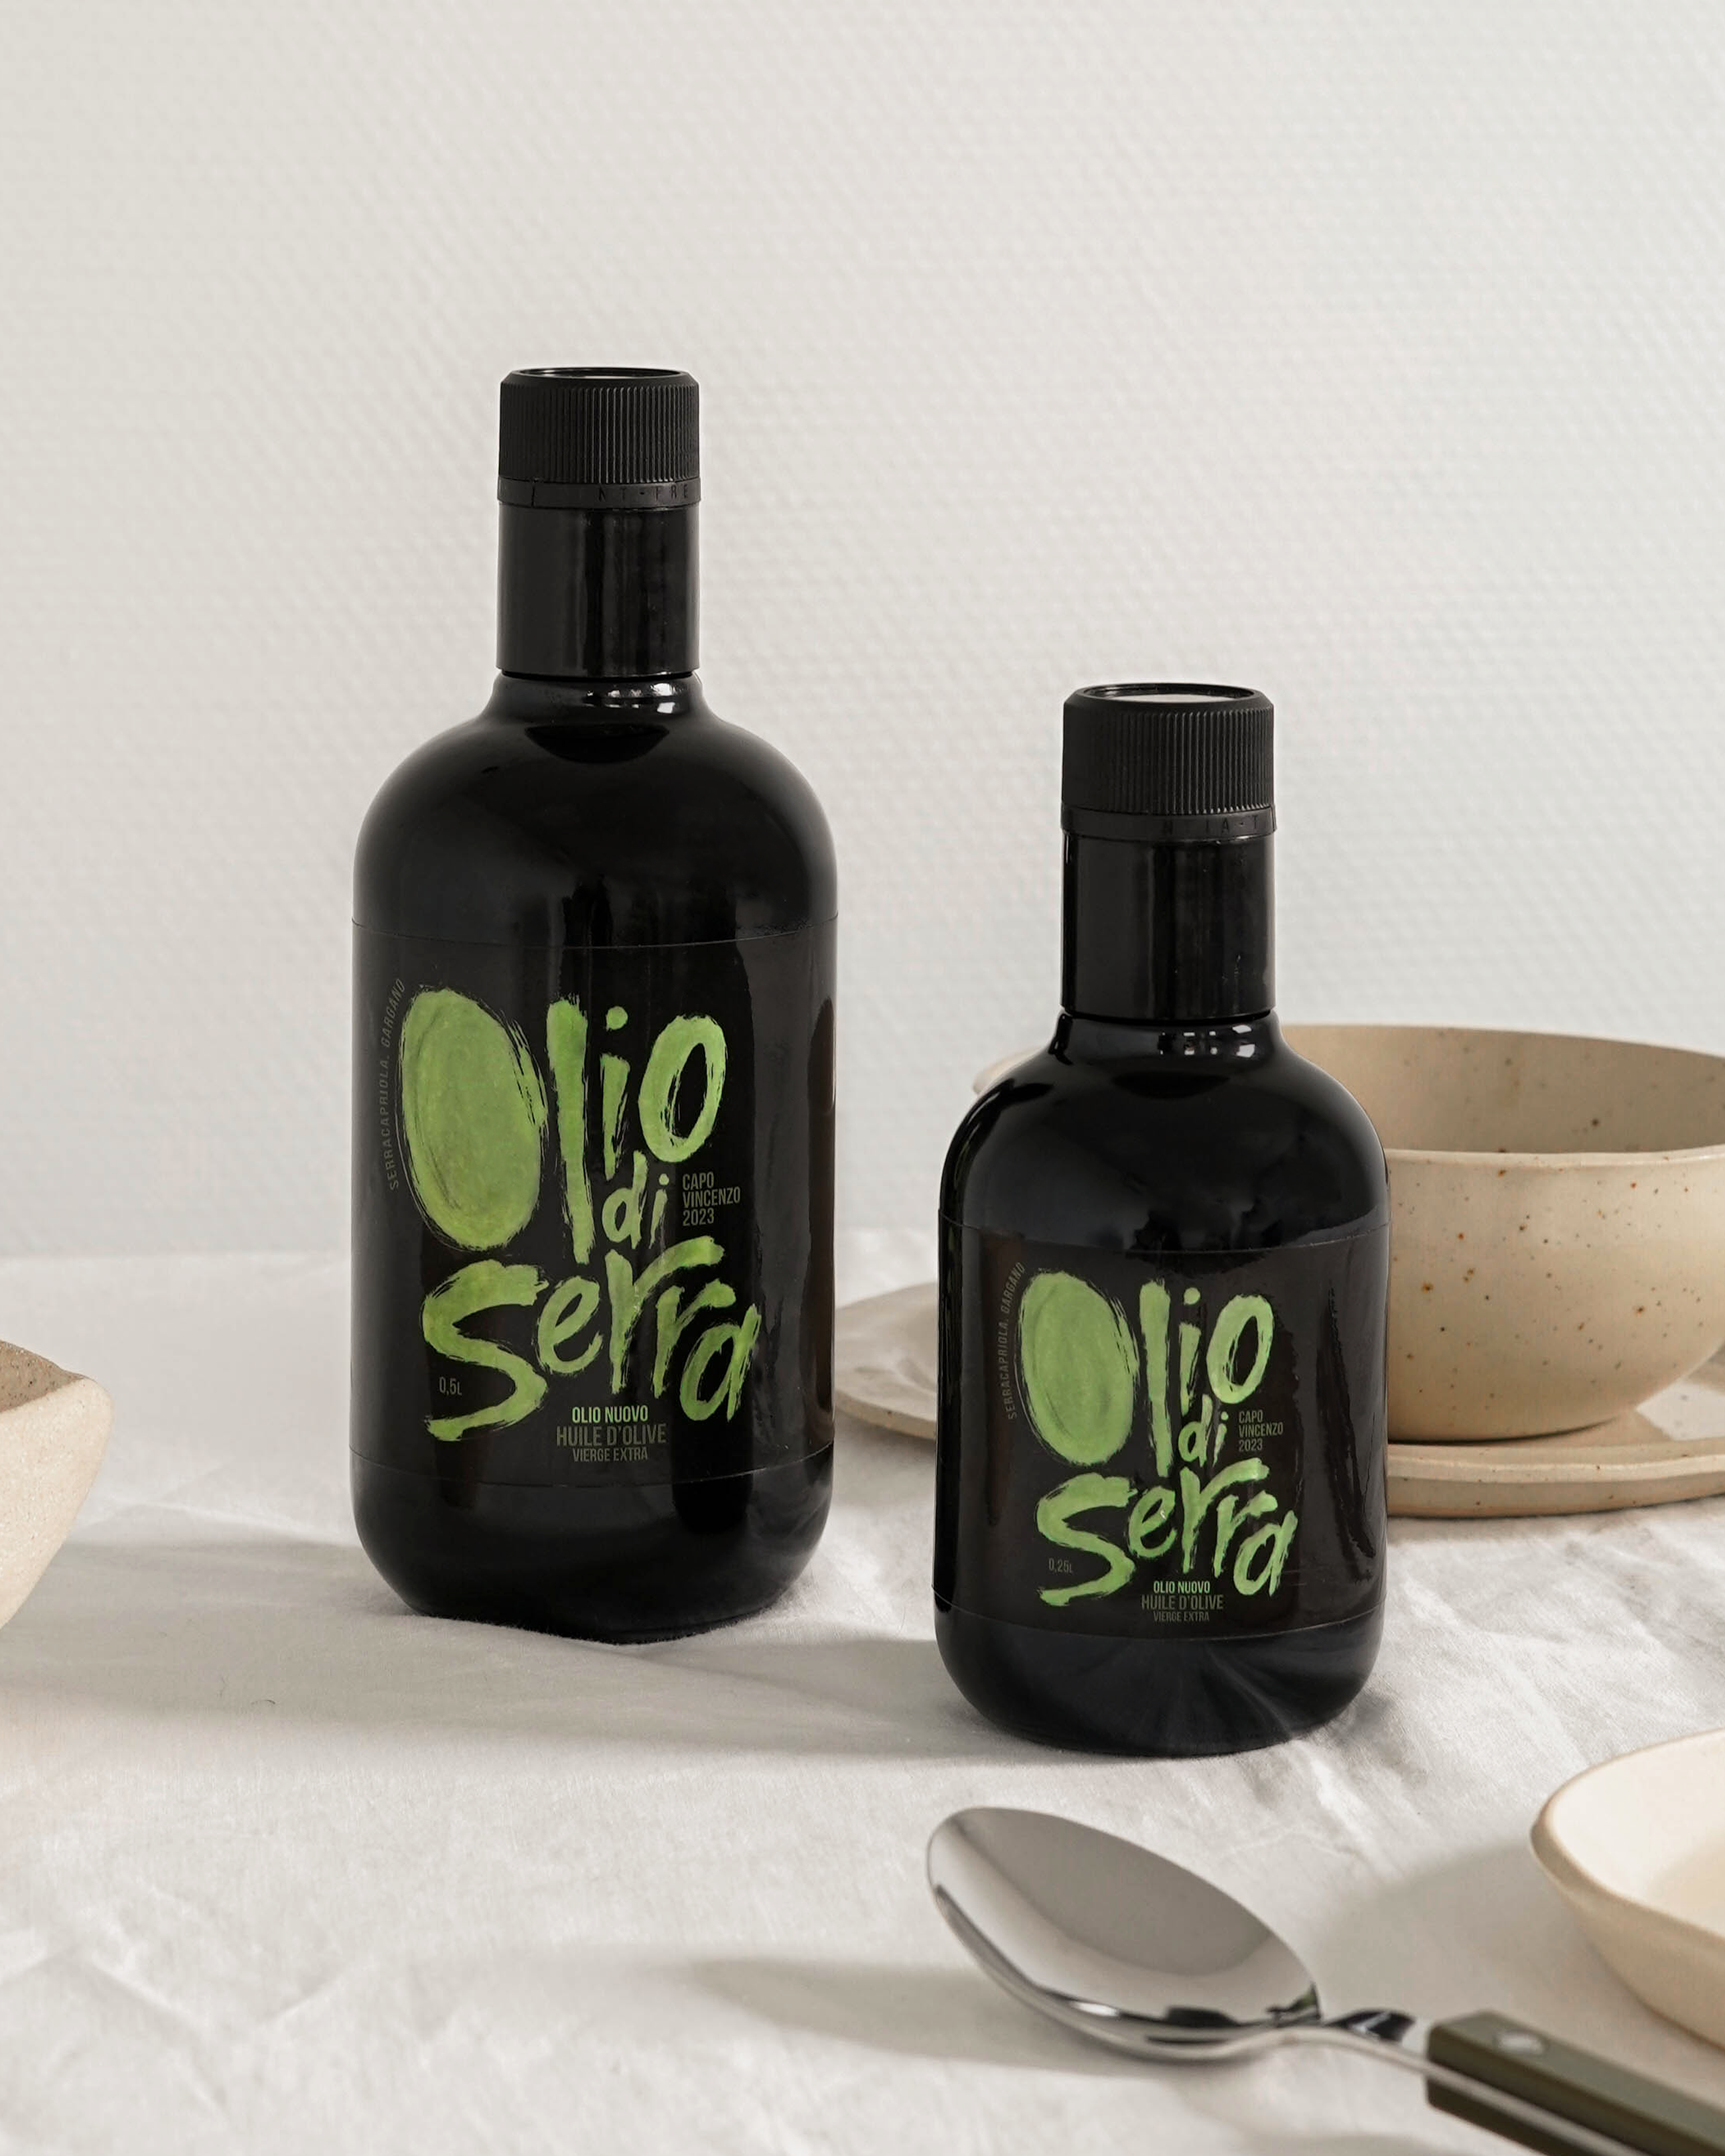 Huile d'olive vierge extra non filtrée 6 bouteilles transparentes